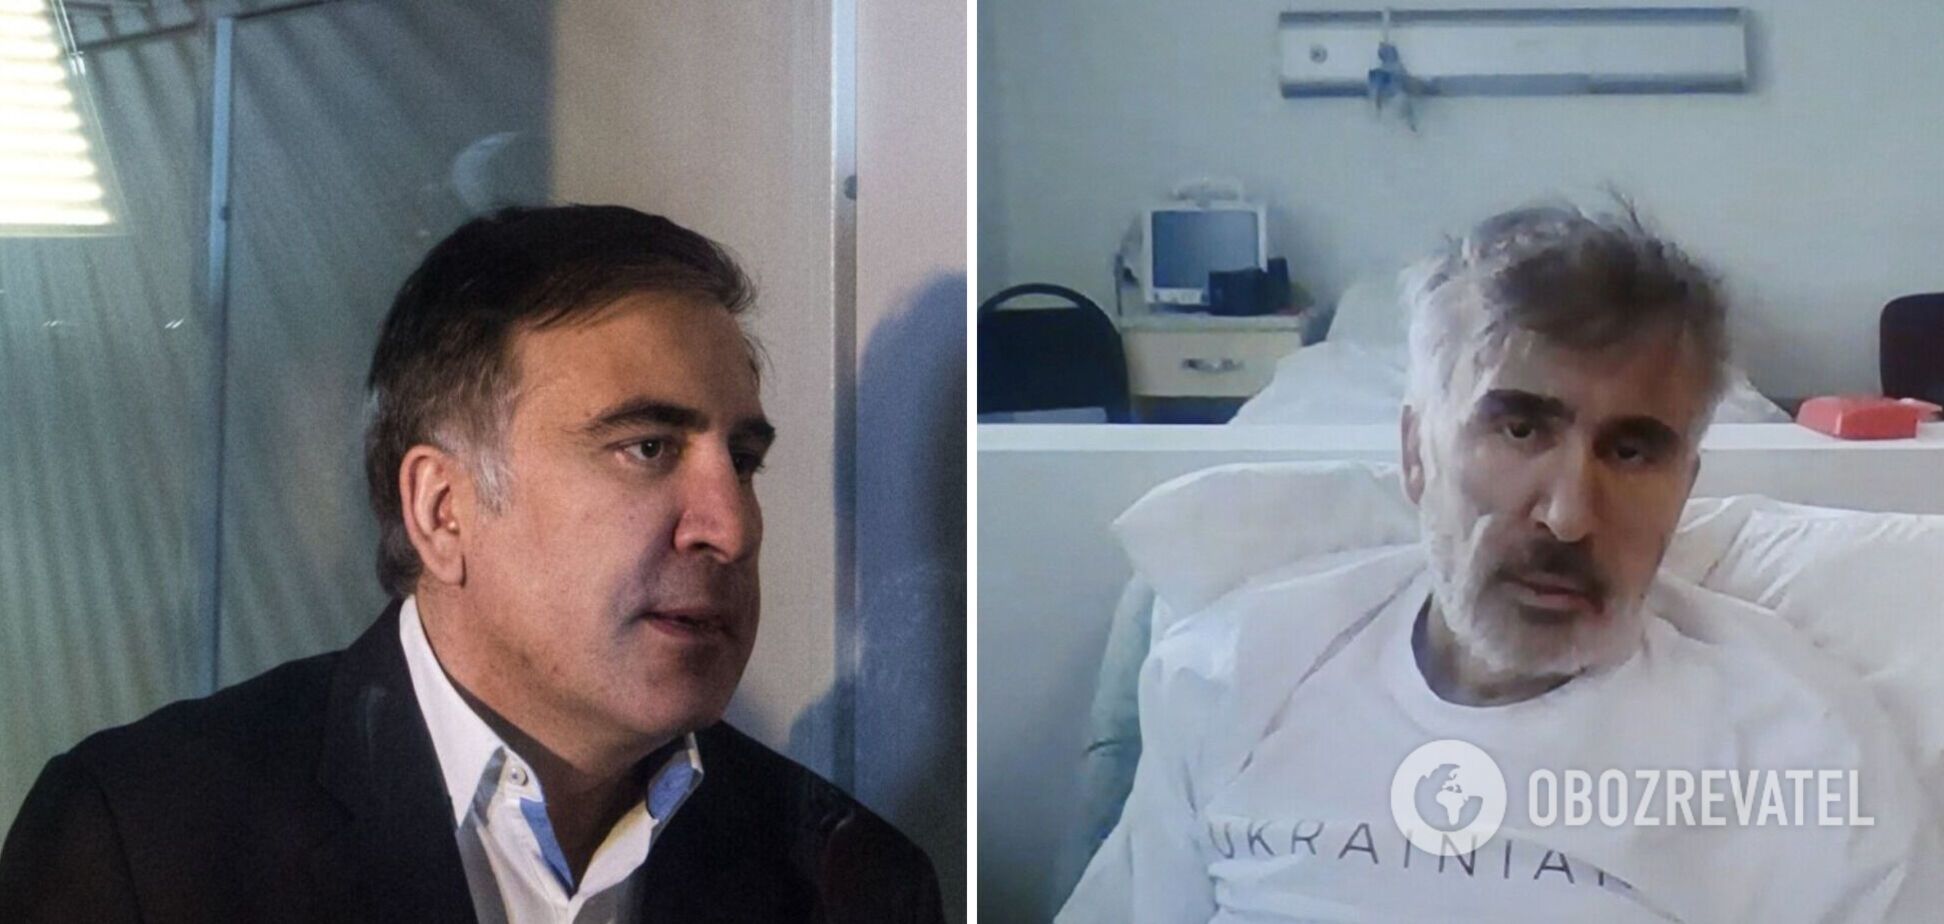 Саакашвили рассказал, что его отравили российские агенты: экс-президент Грузии дал интервью Politico